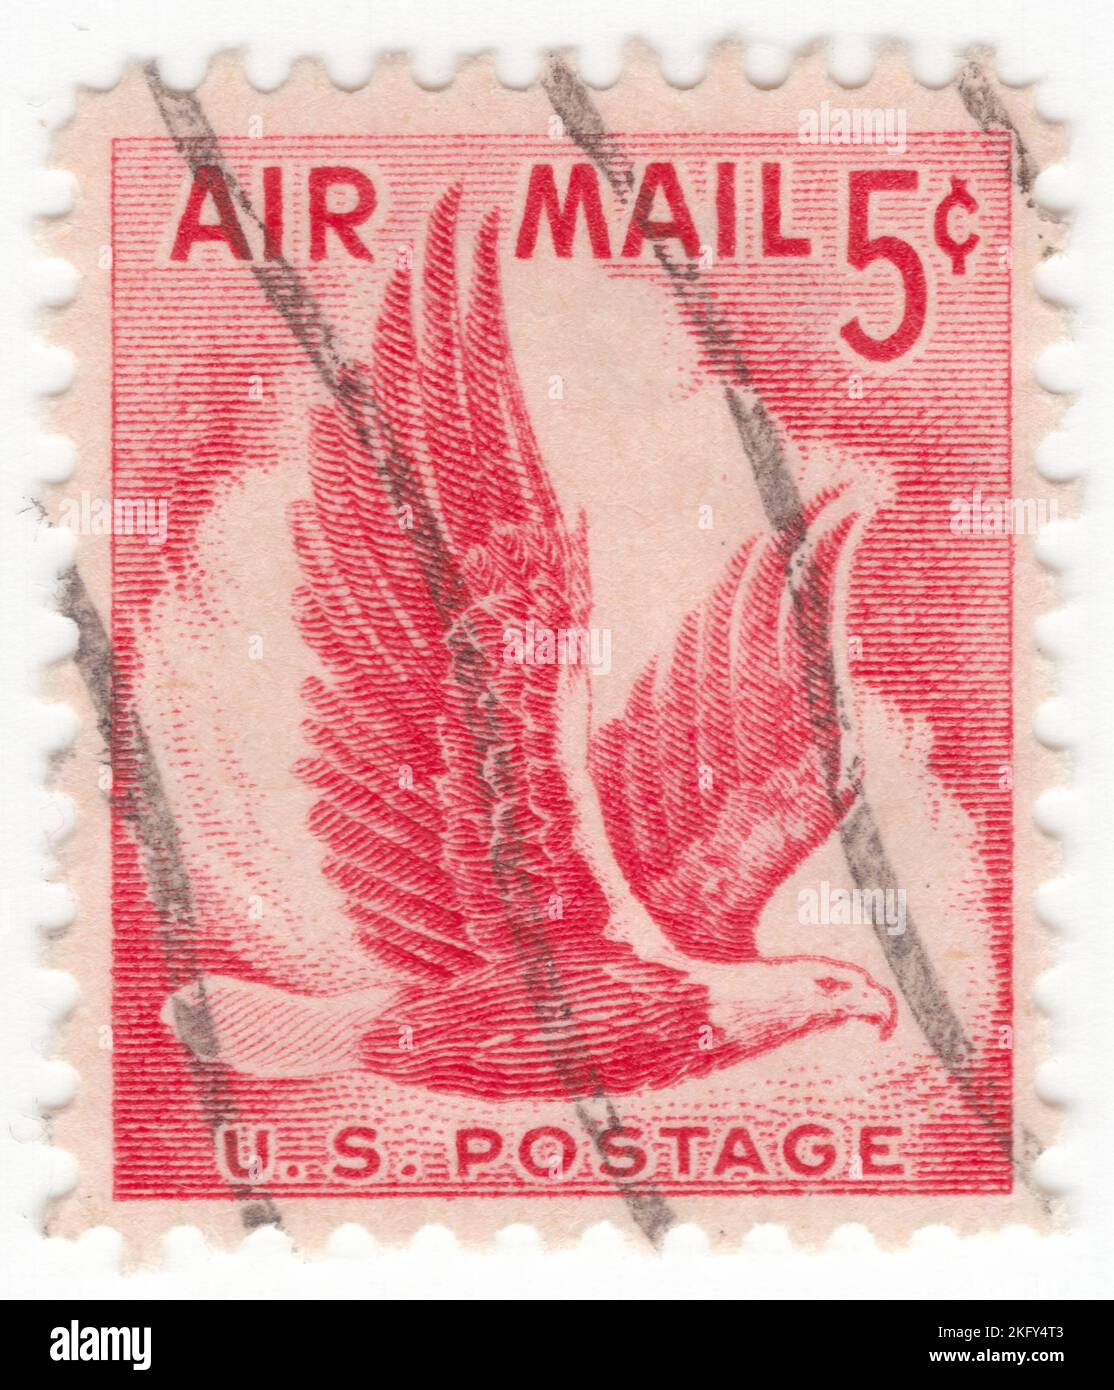 USA - 1958. Juli 31: Eine rosérote 5-Cent-Marke der Air Post, die Eagle in Flight zeigt. Für die Vorauszahlung des Portos auf allen Postkarten, die per Luftpost verschickt werden Stockfoto